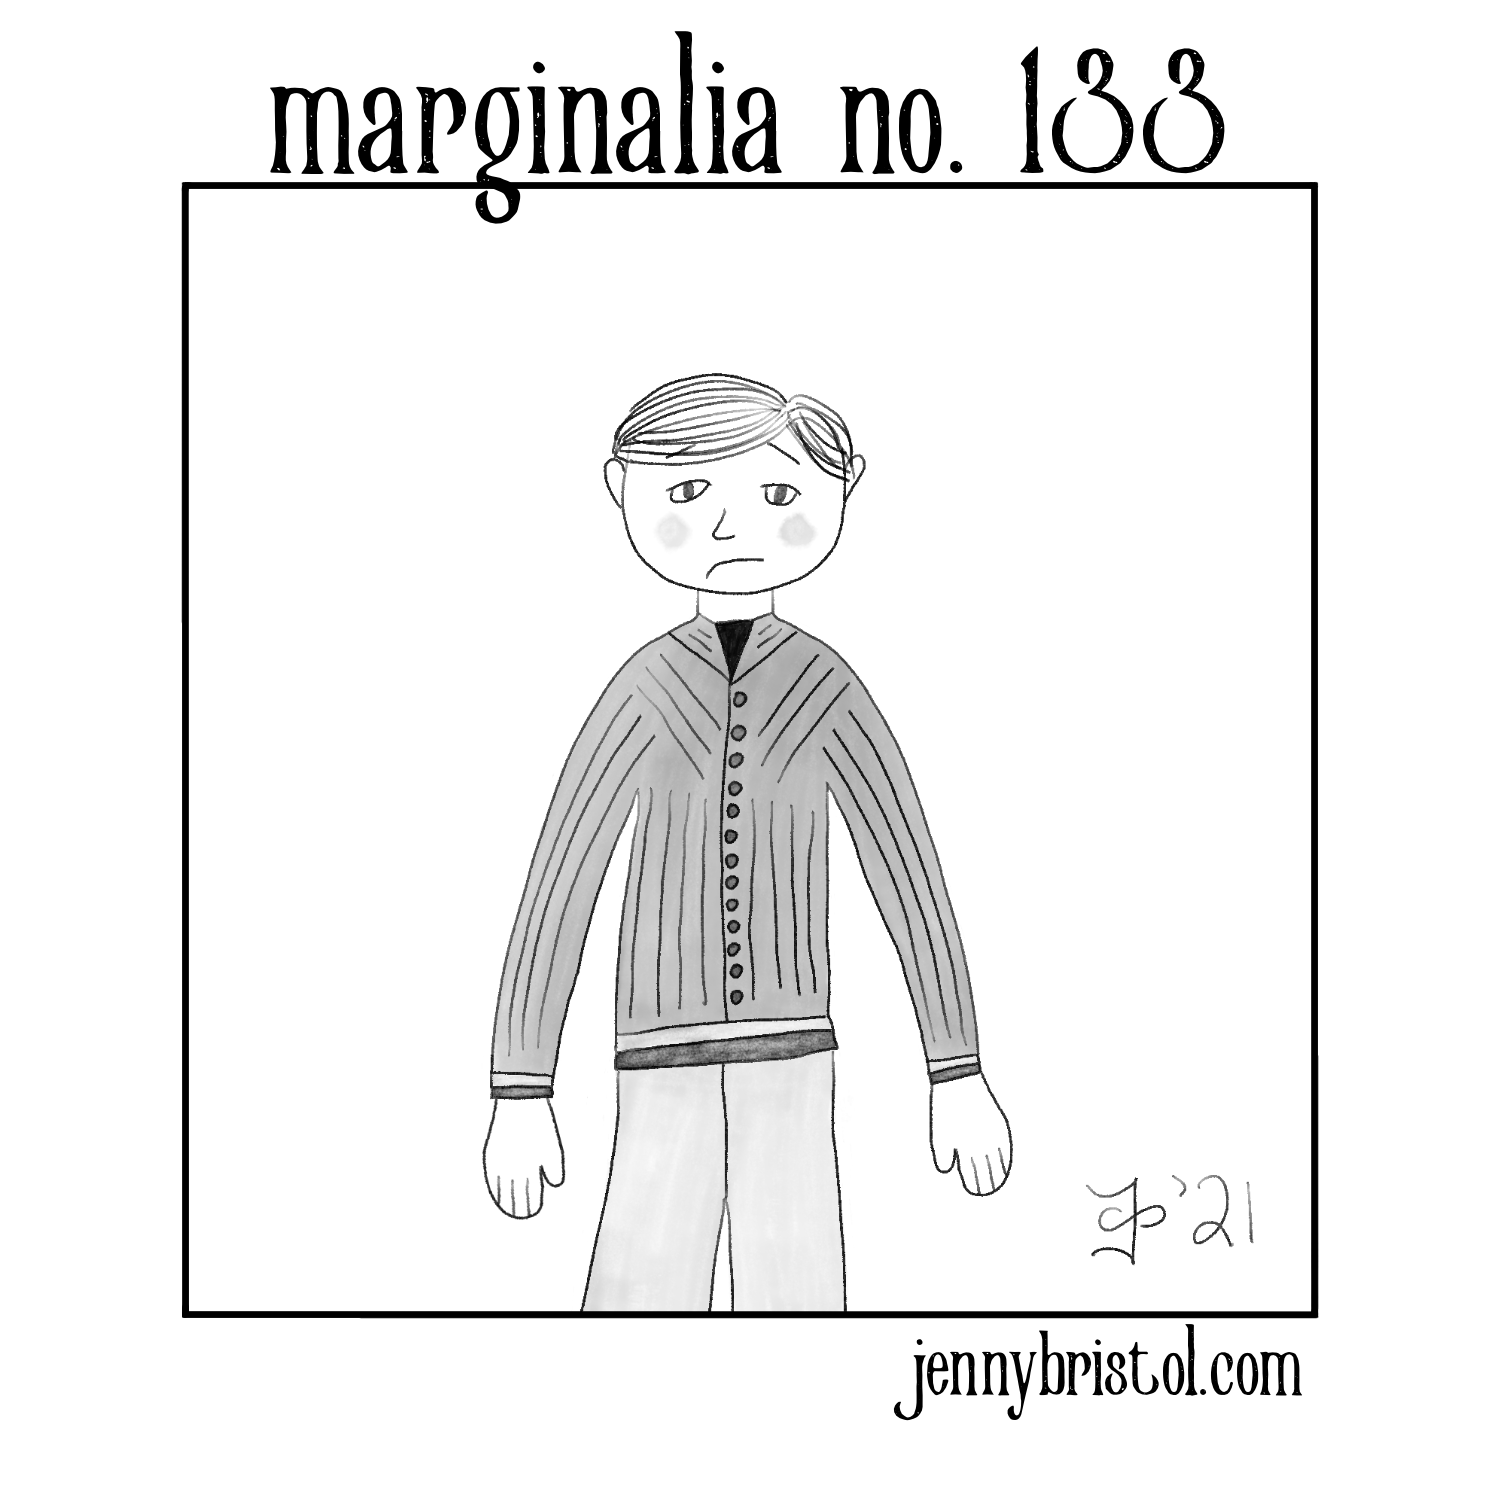 Marginalia_No._133